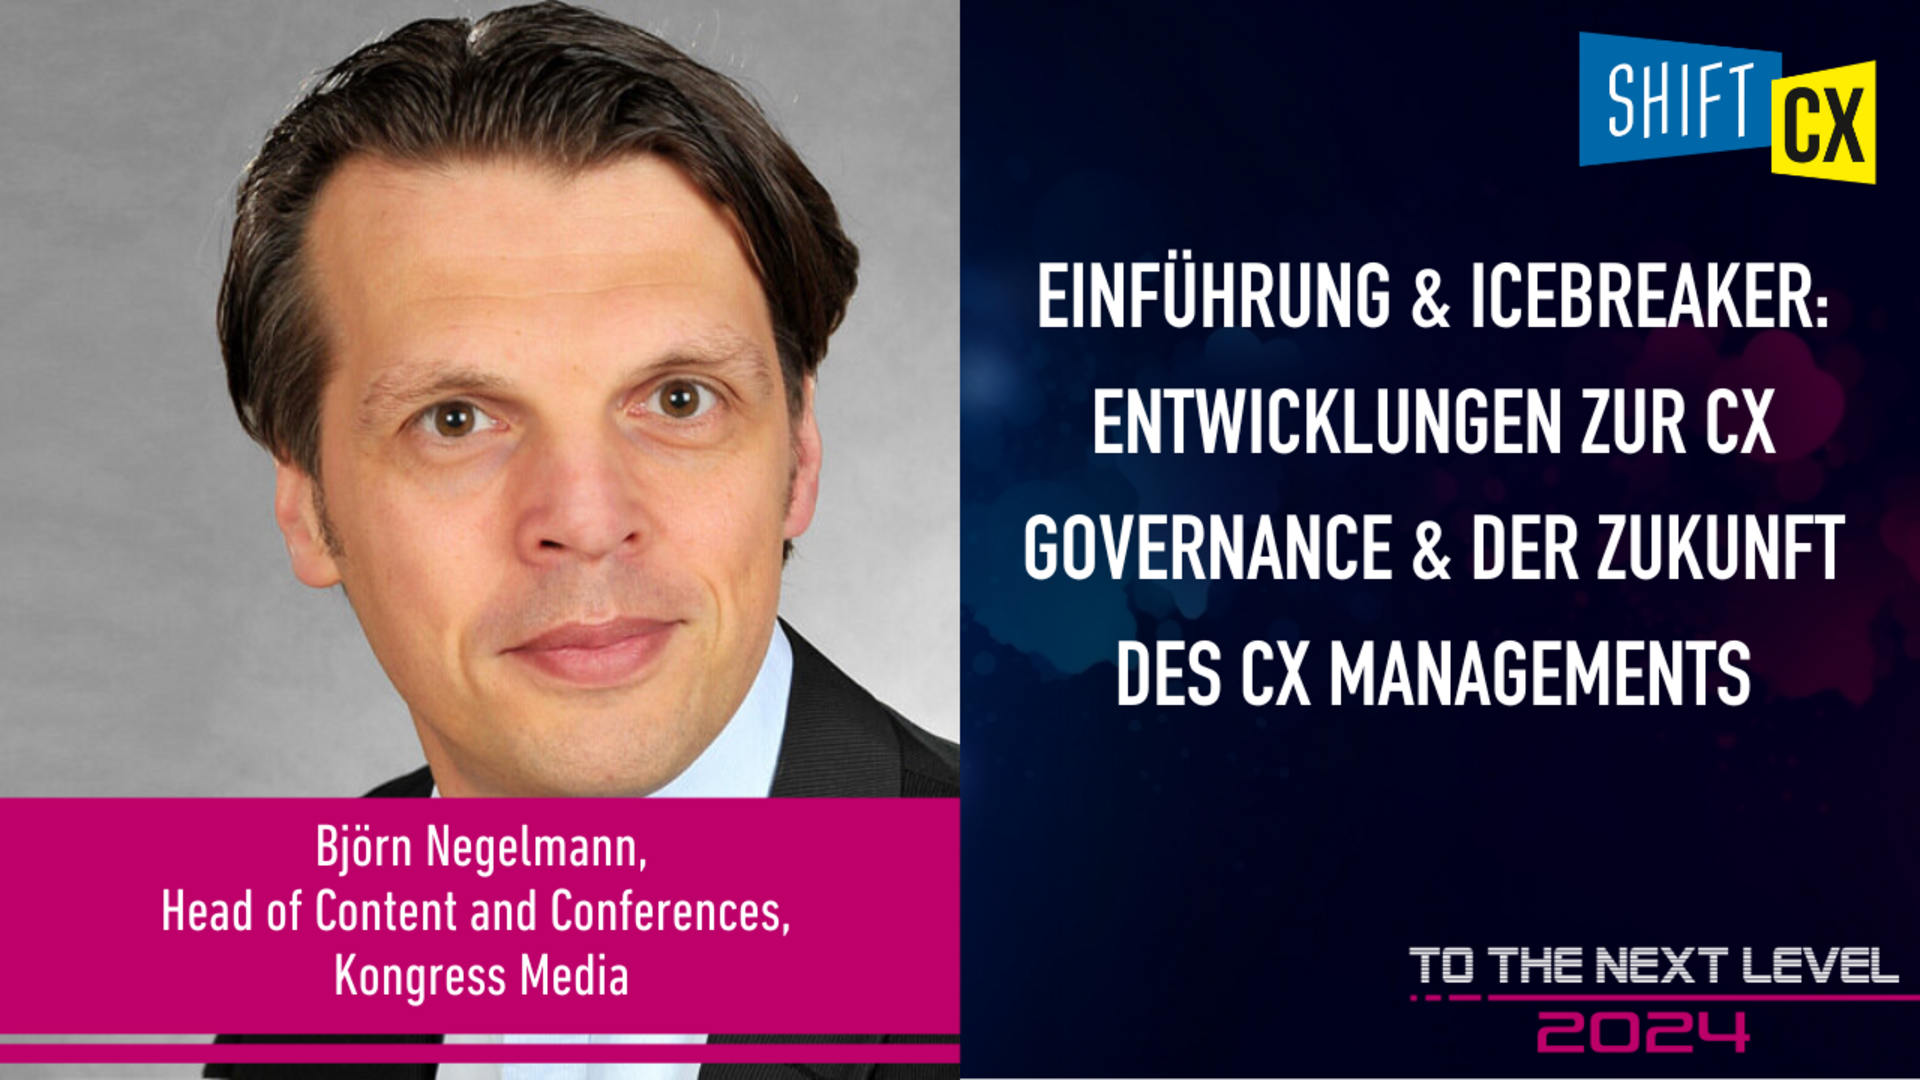 Einführung & Icebreaker: Entwicklungen zur CX Governance & der Zukunft des CX Managements